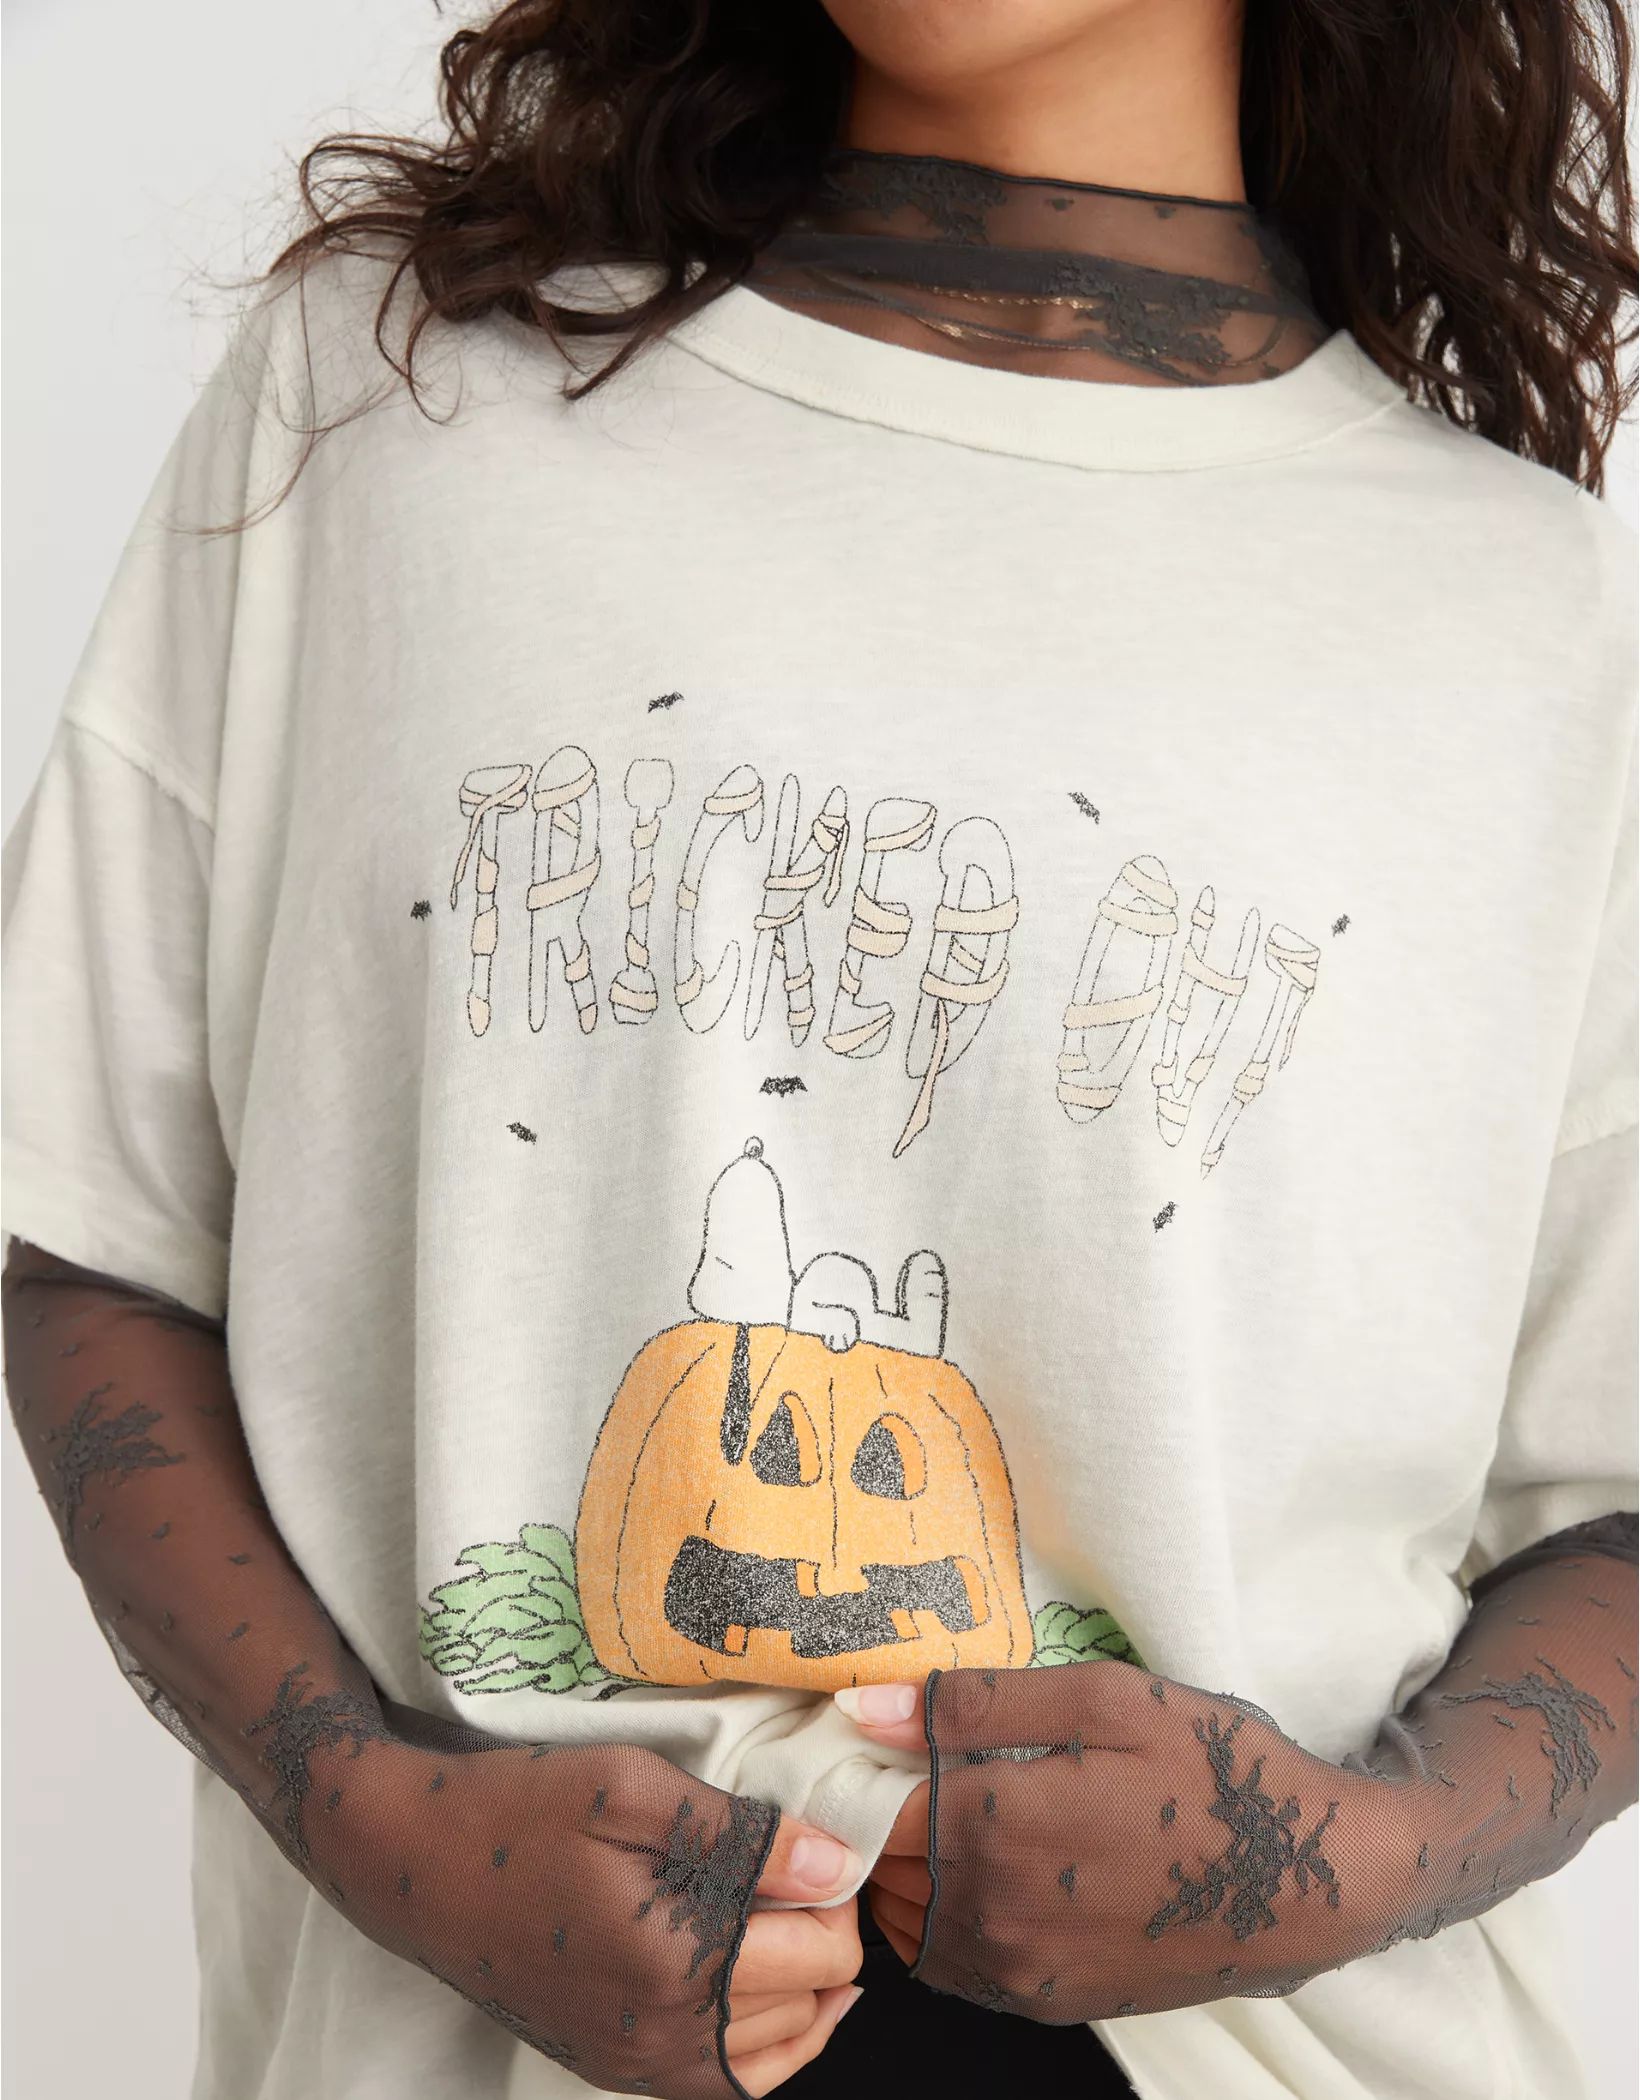 Aerie Crewneck Graphic Oversized Boyfriend T-Shirt | Aerie